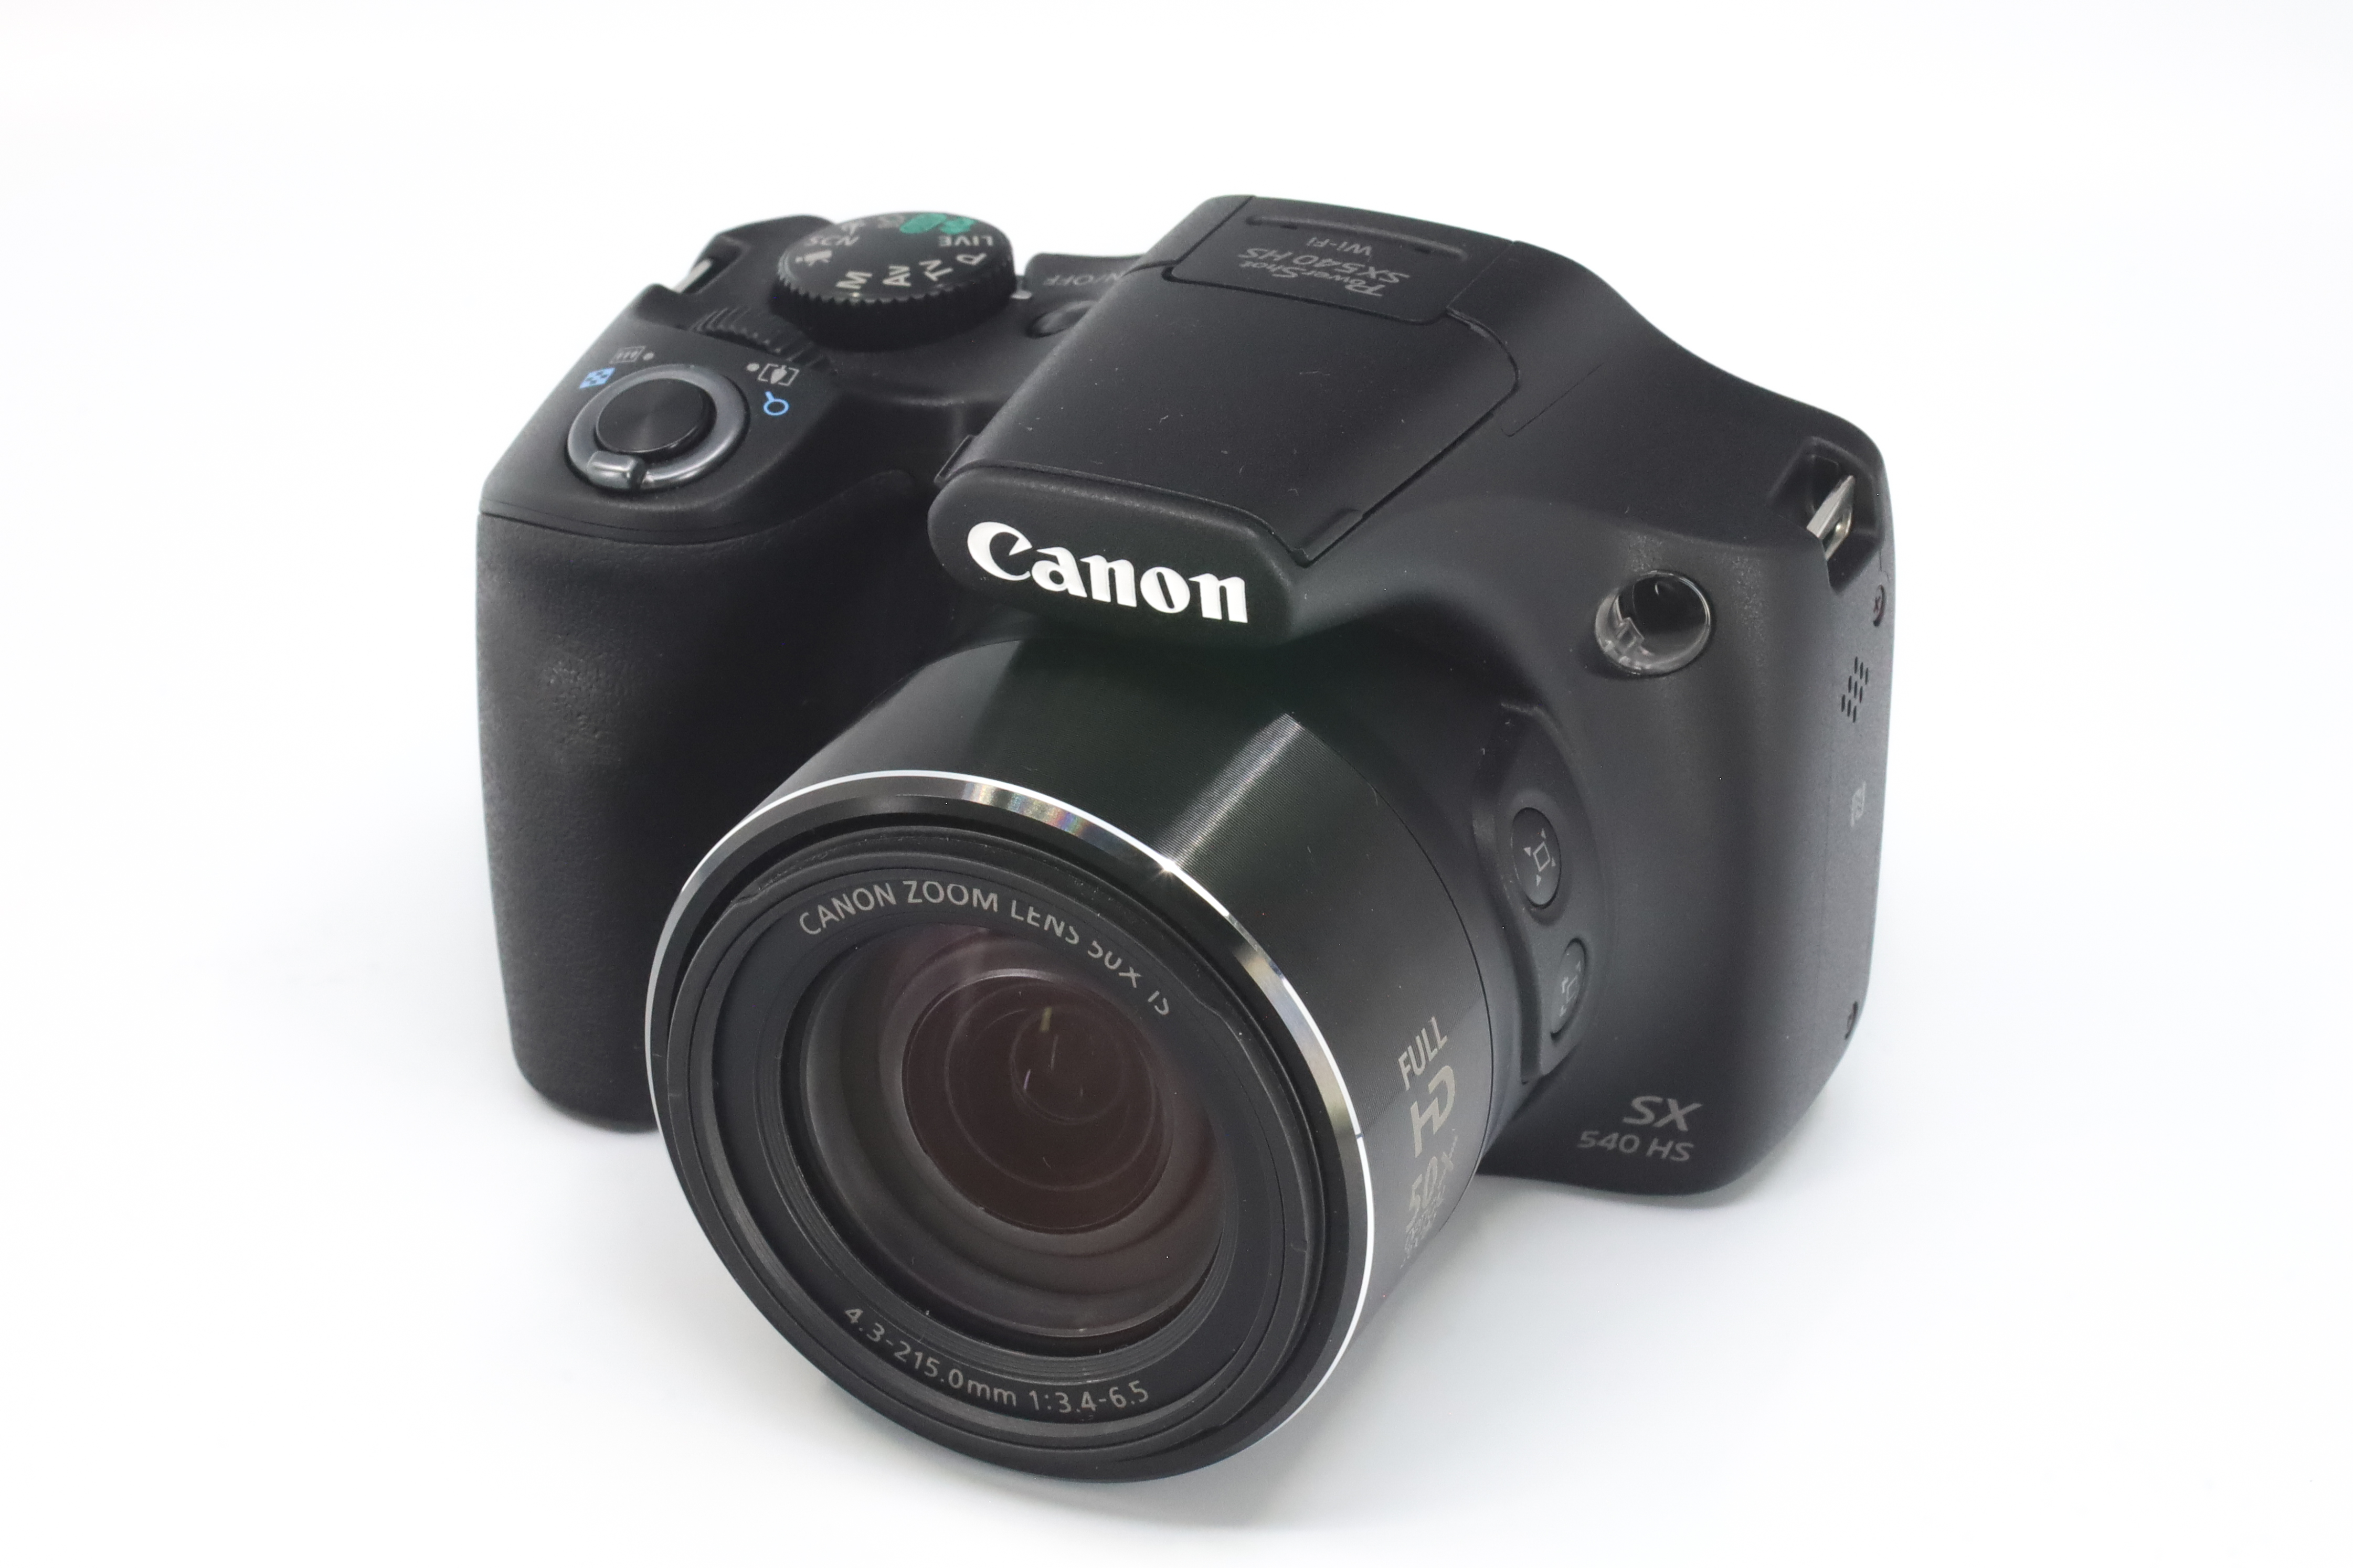 Canon SX 540 HS 242063003755 6 1